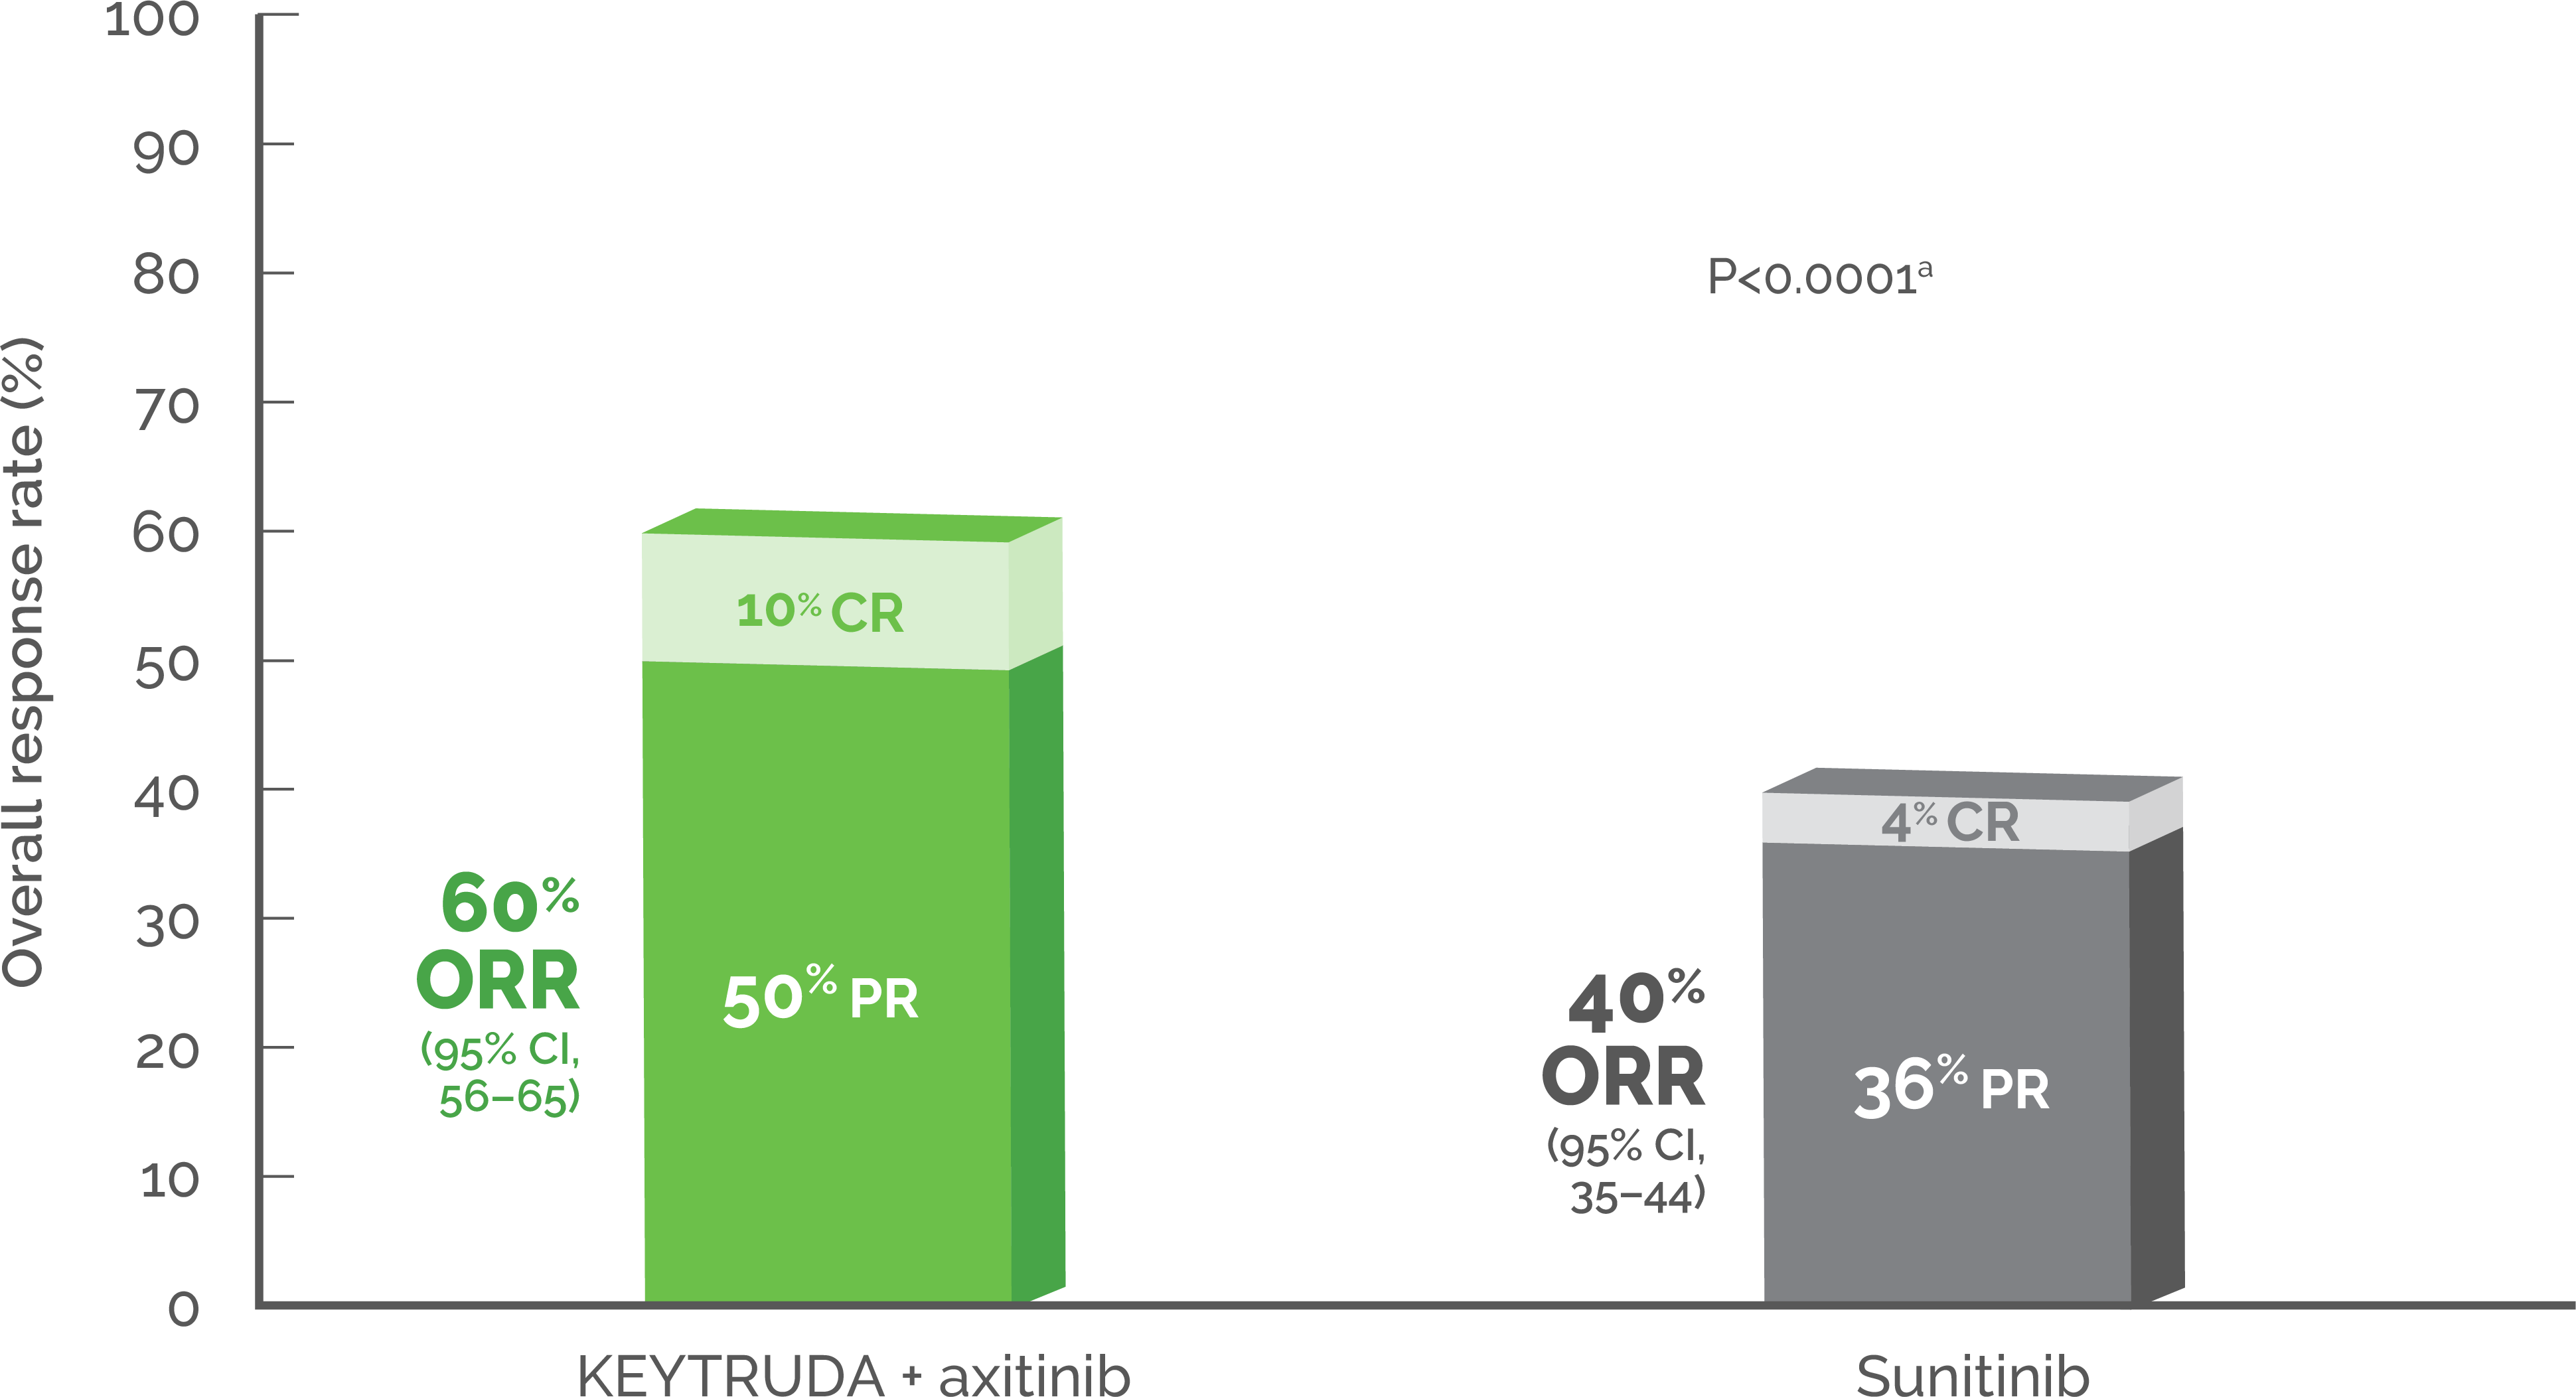 Overall response rate. KEYTRUDA + axitinib 60% ORR (10% CR & 50% PR). Sunitinib 40% ORR (4% CR & 36% PR)